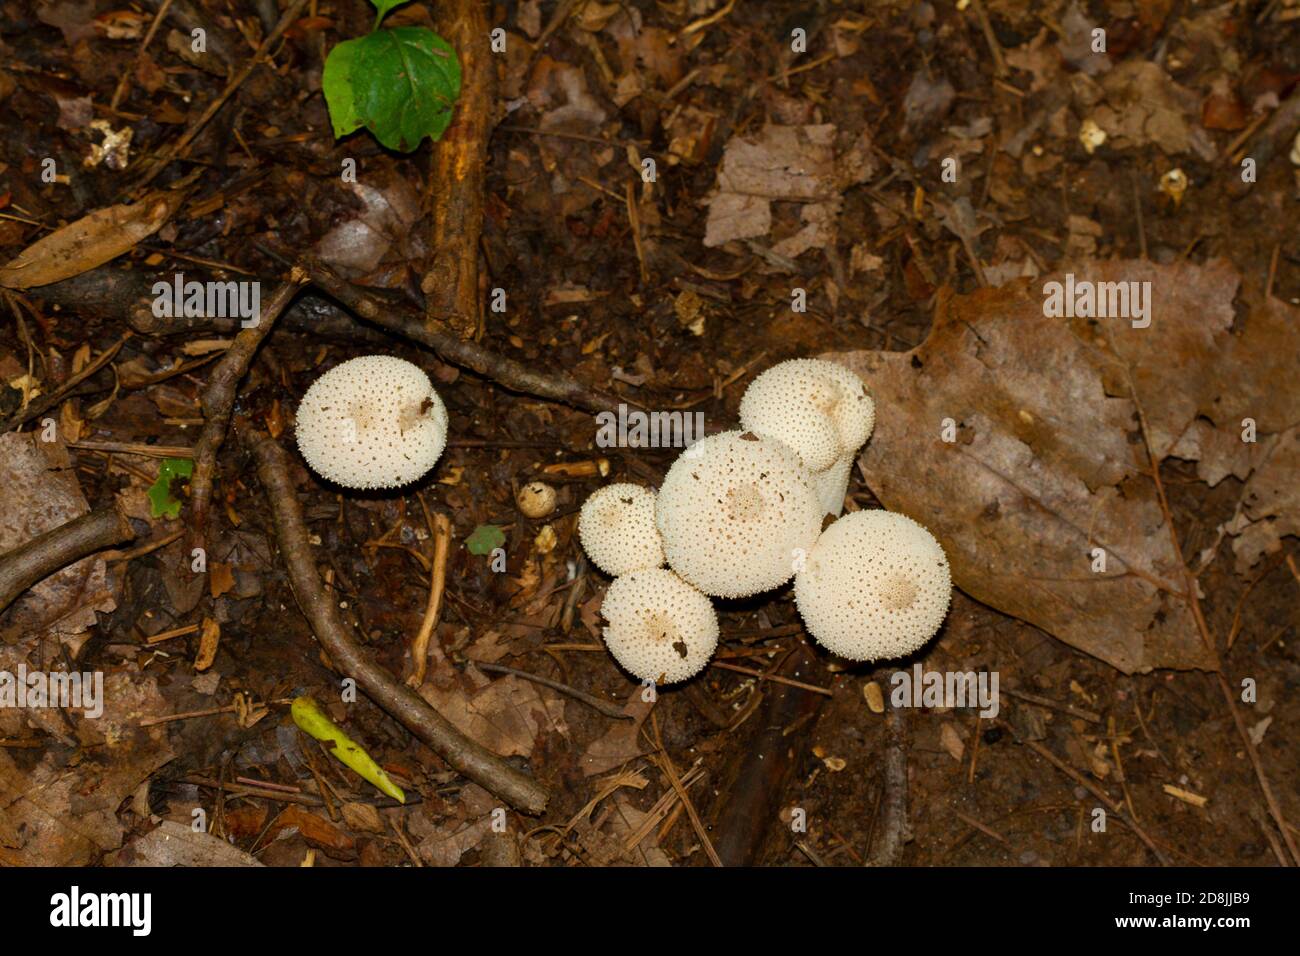 Immagine isolata di comune fungo puffball a.k.a Lycoperdon Perlatum, un fungo bianco a forma di club che cresce sul fondo umido della foresta dopo la pioggia. L'immagine era t Foto Stock